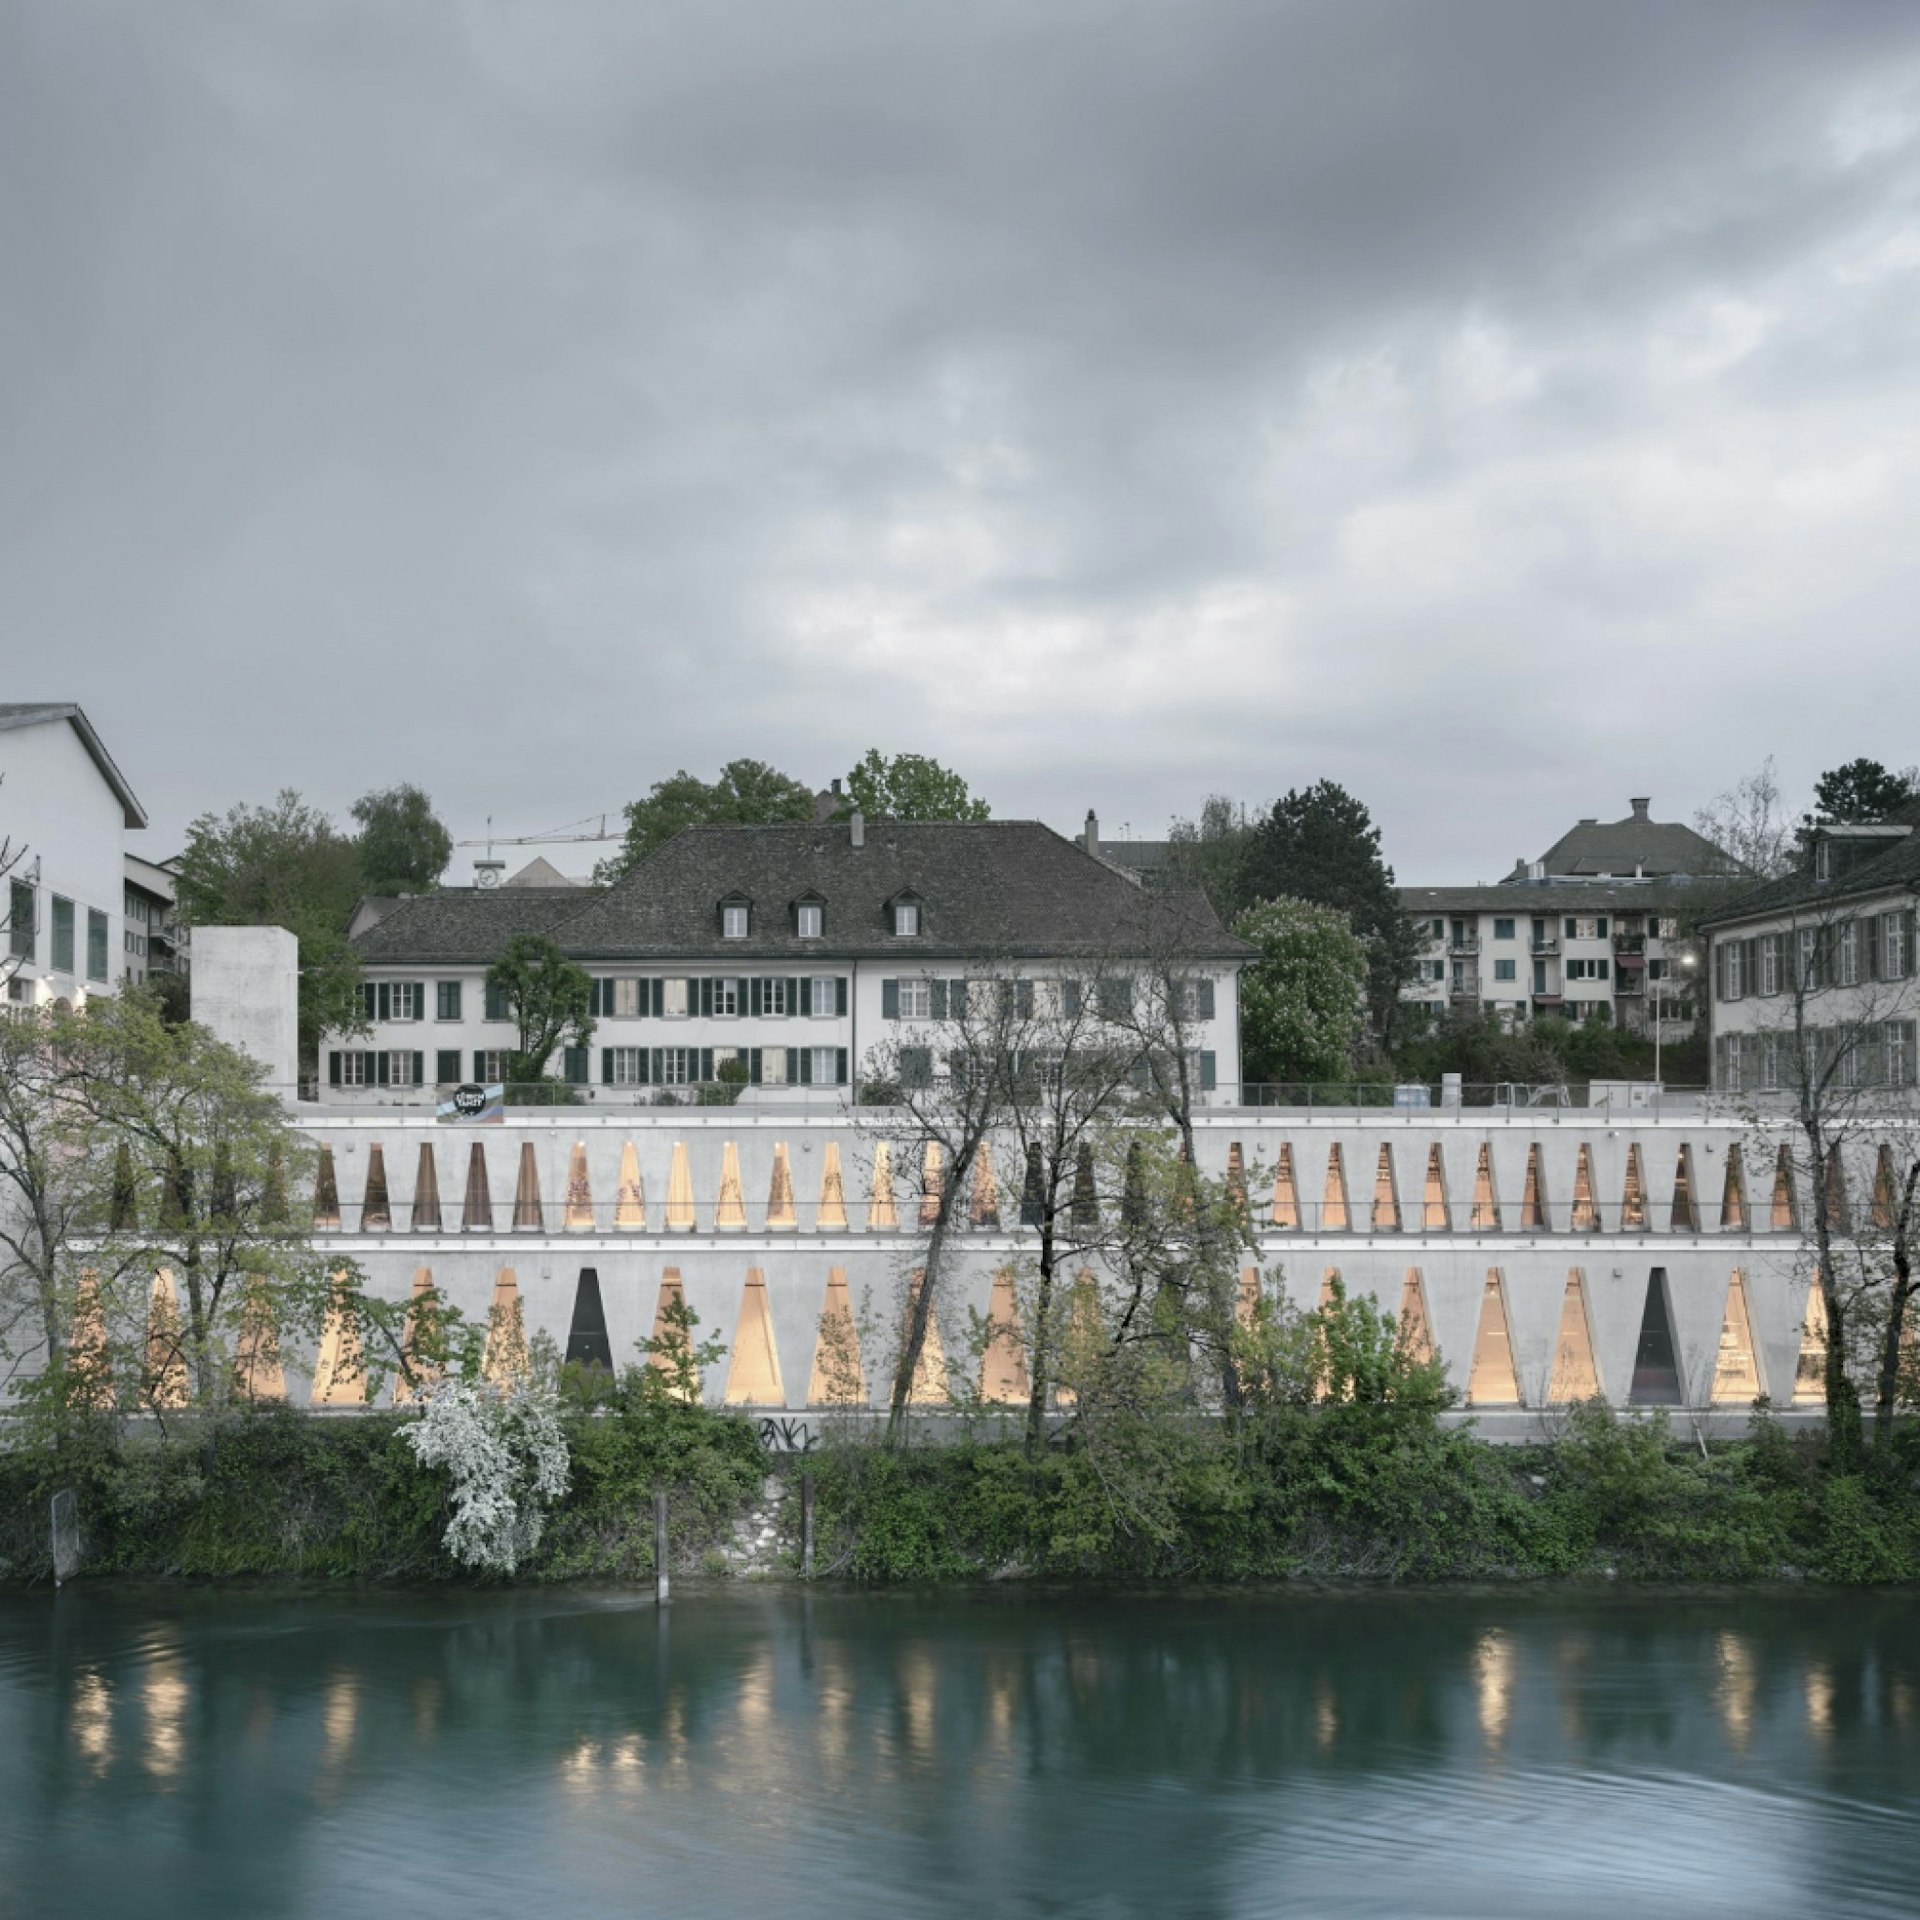 1 - Tanzhaus Zürich from the river Limmat